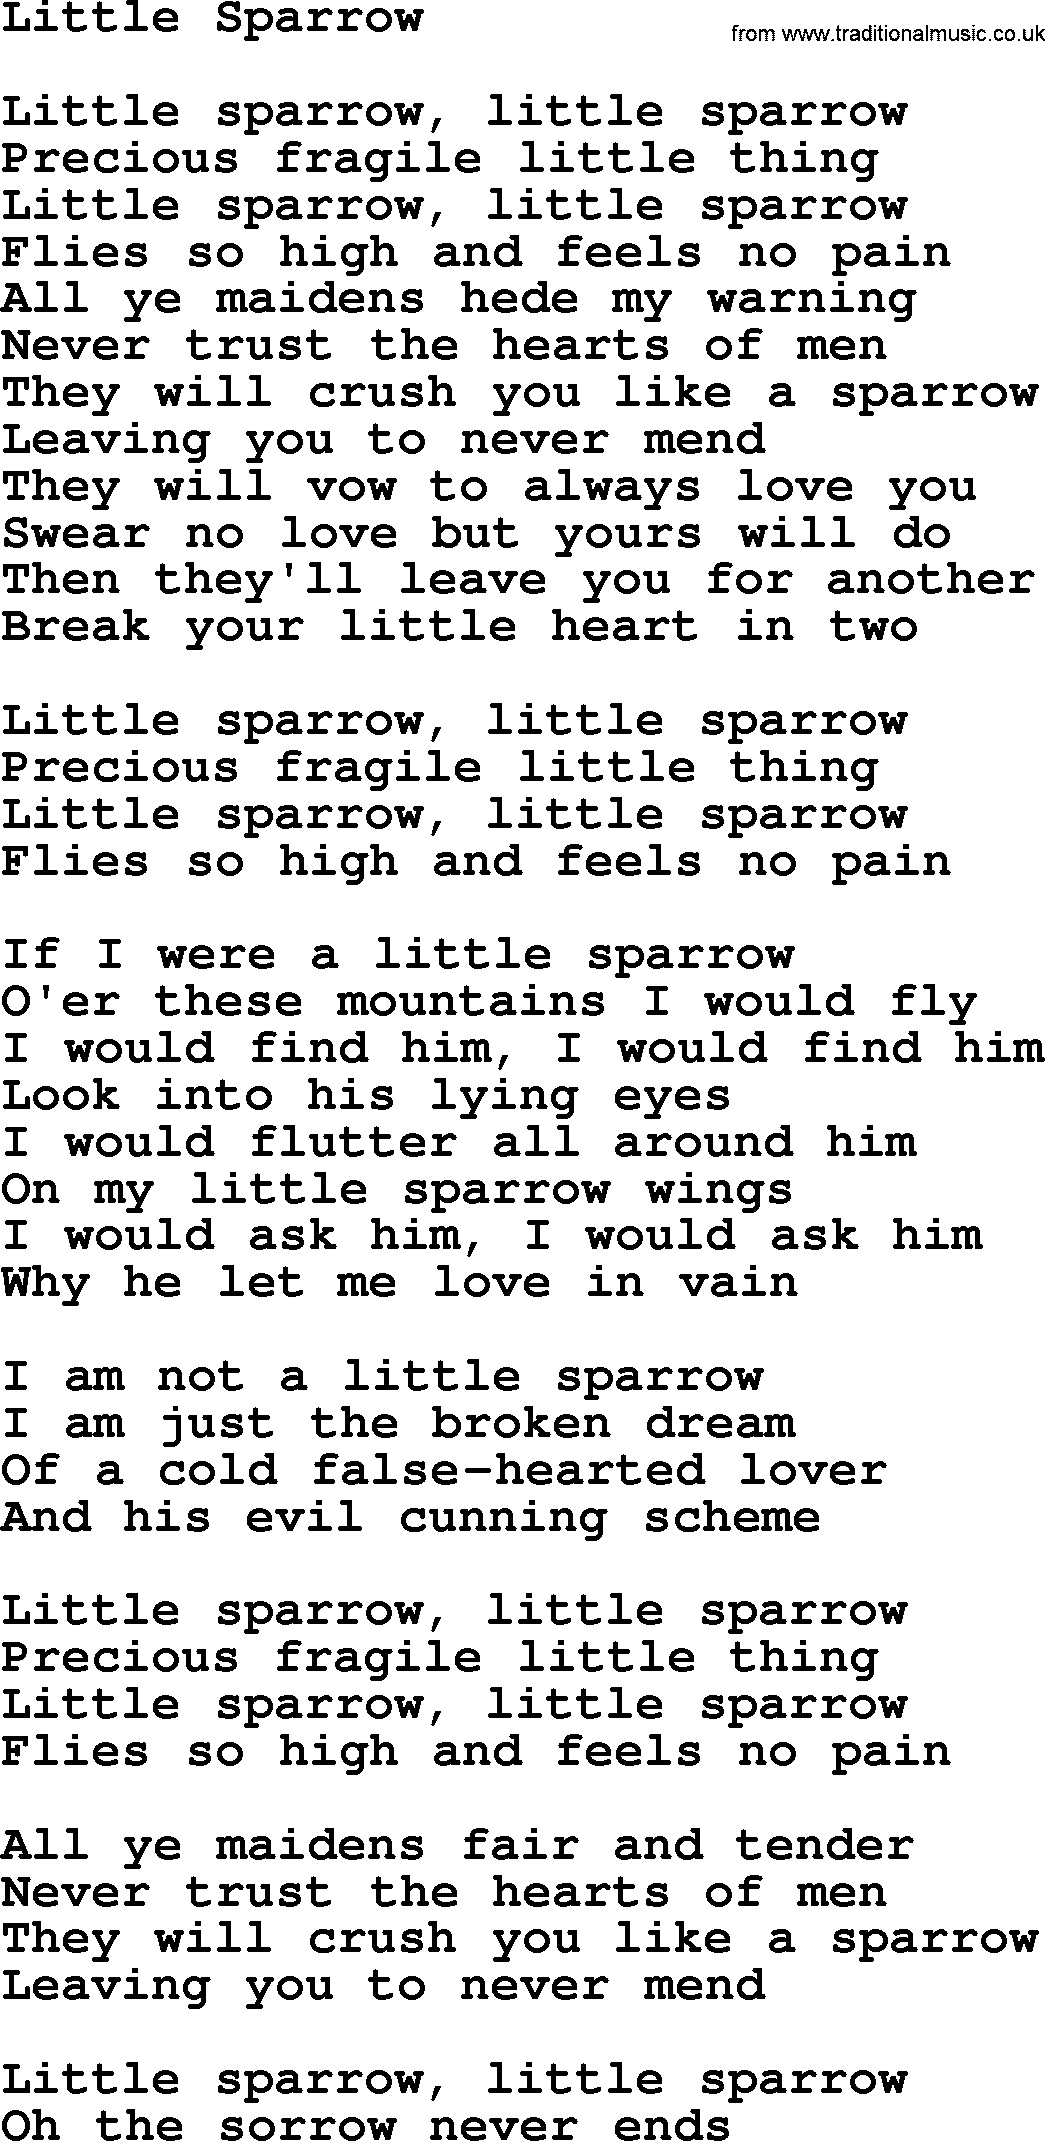 Dolly Parton song Little Sparrow.txt lyrics